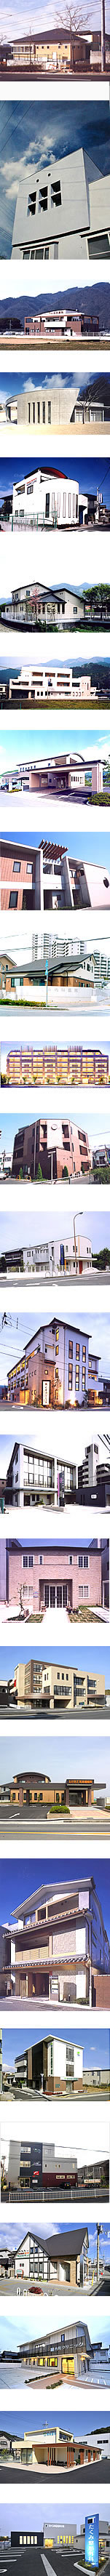 柳川瀬建築設計事務所が設計・建築した写真